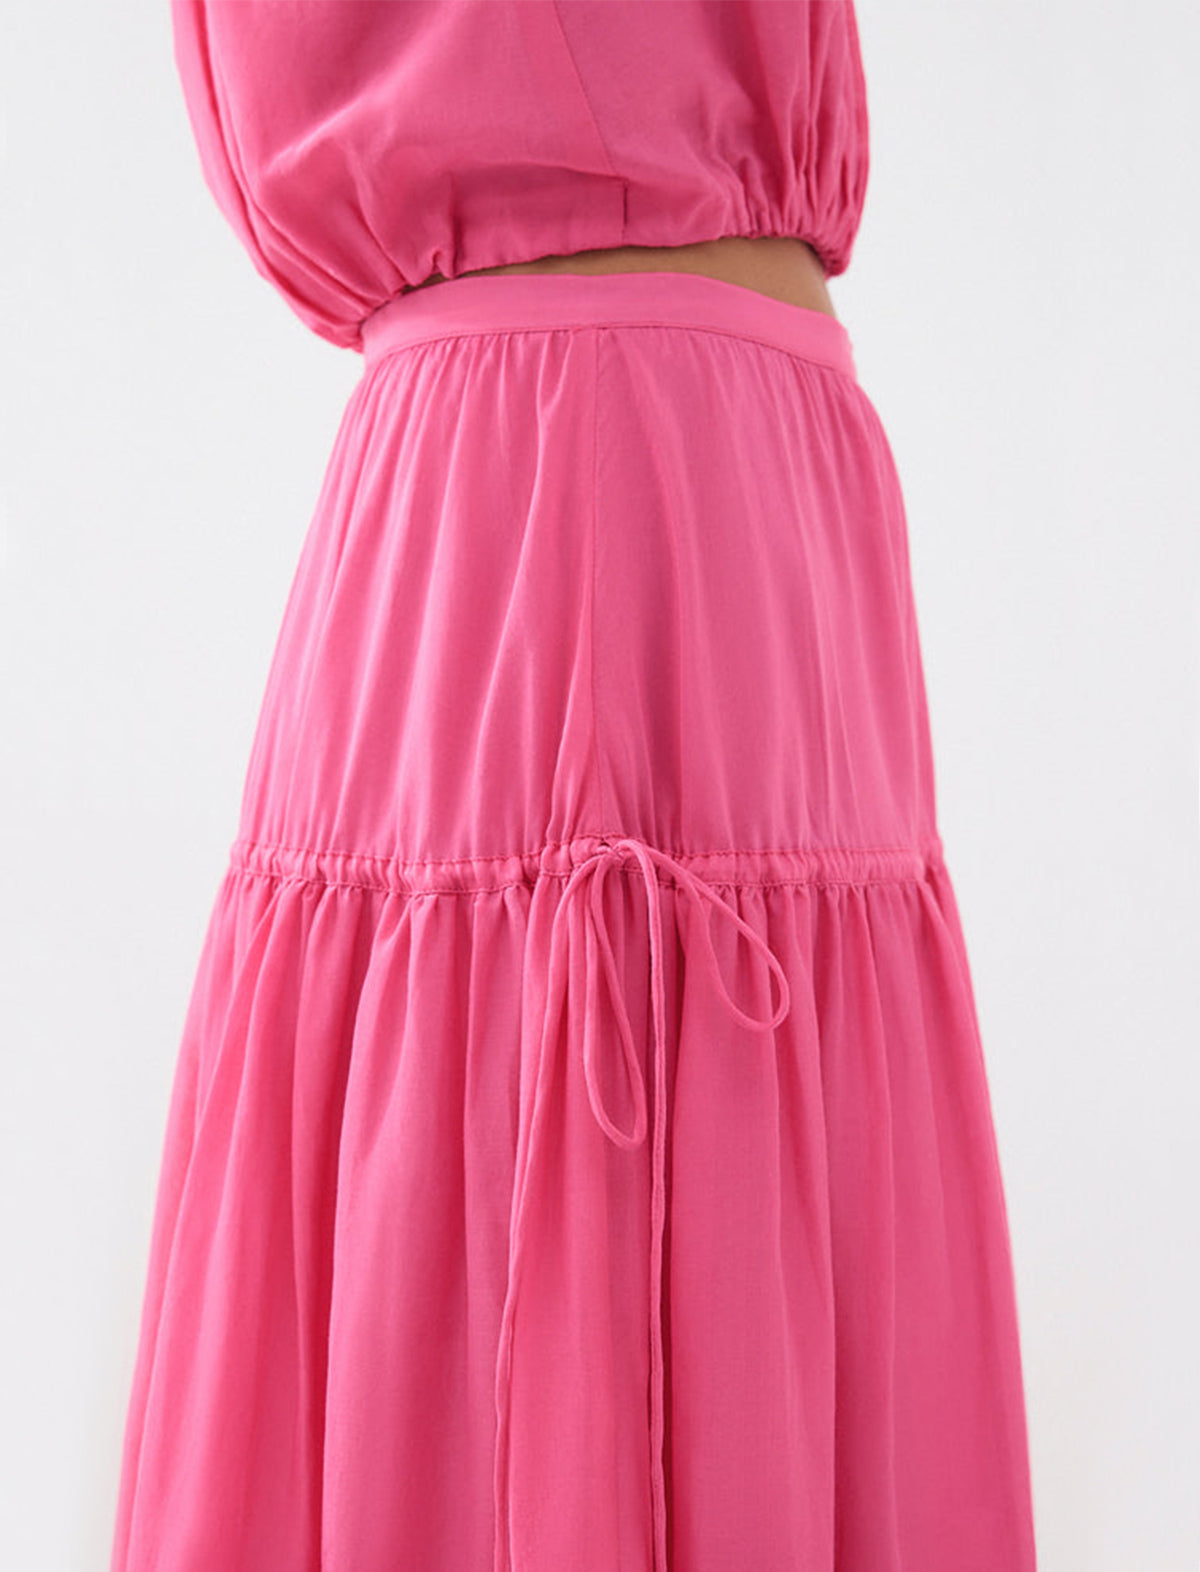 BIRD & KNOLL Lilibet Skirt in Hot Pink